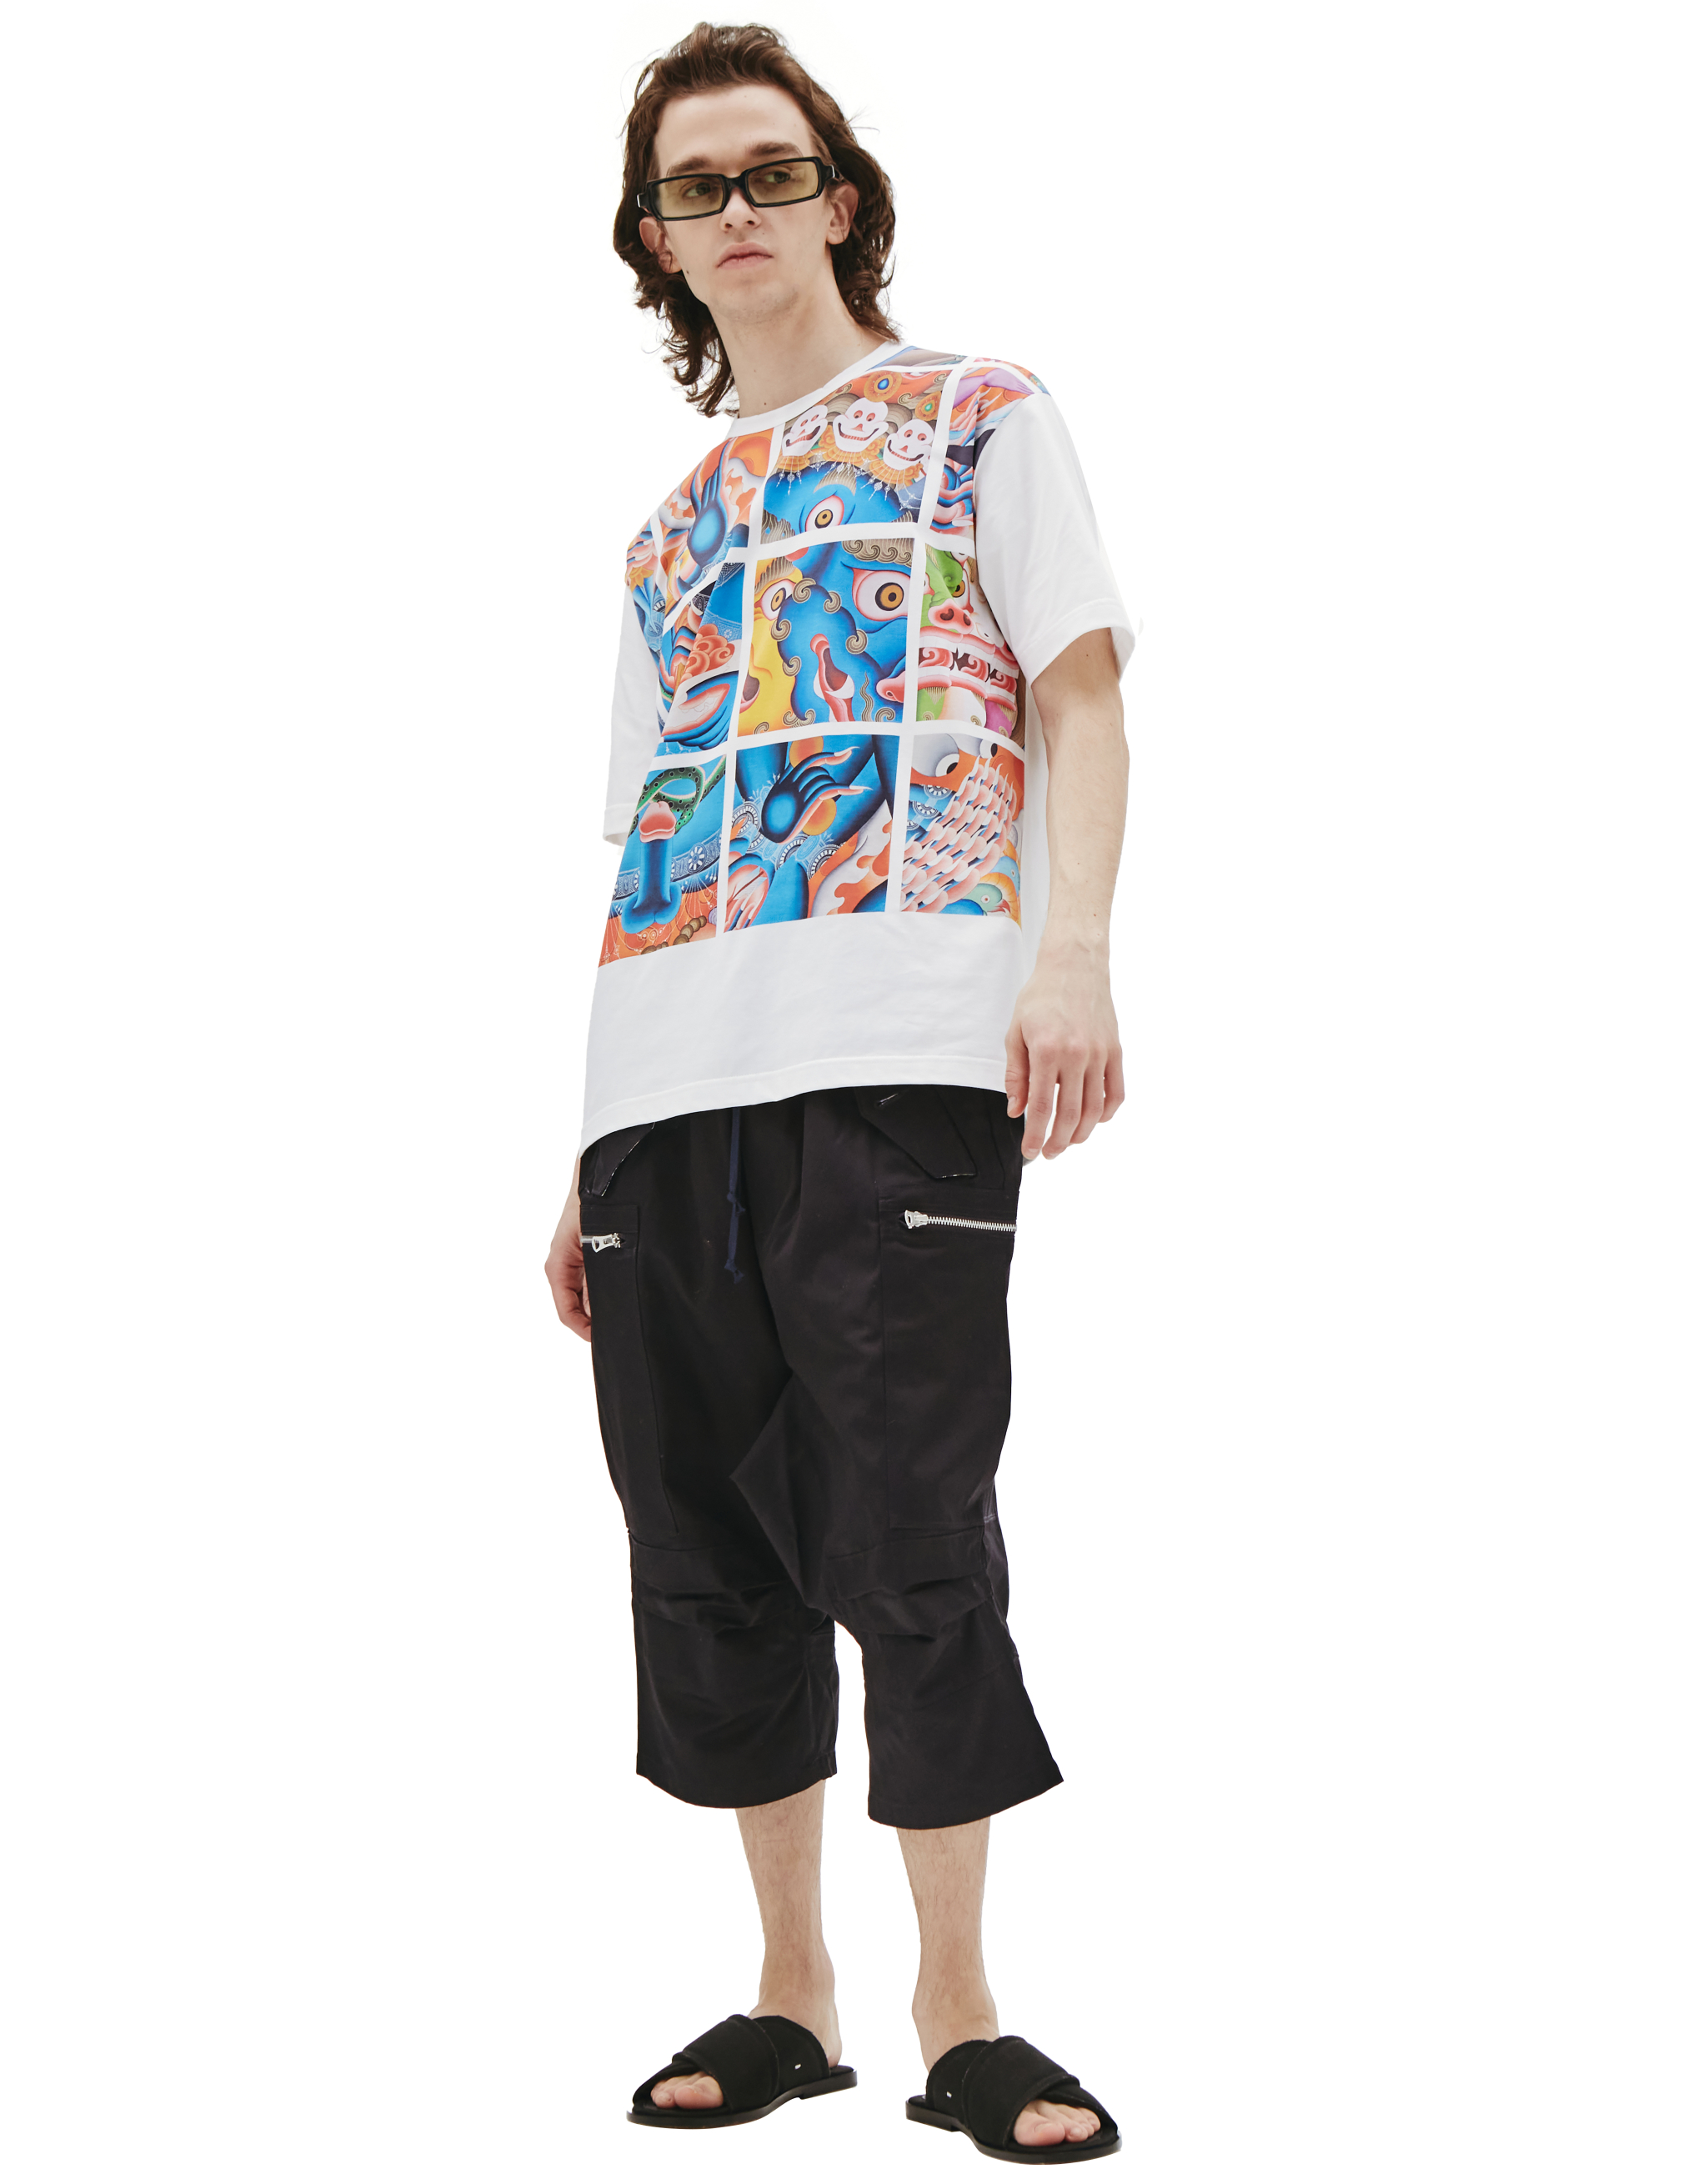 Хлопковая футболка с восточным принтом - Junya Watanabe WI-T004-051-1